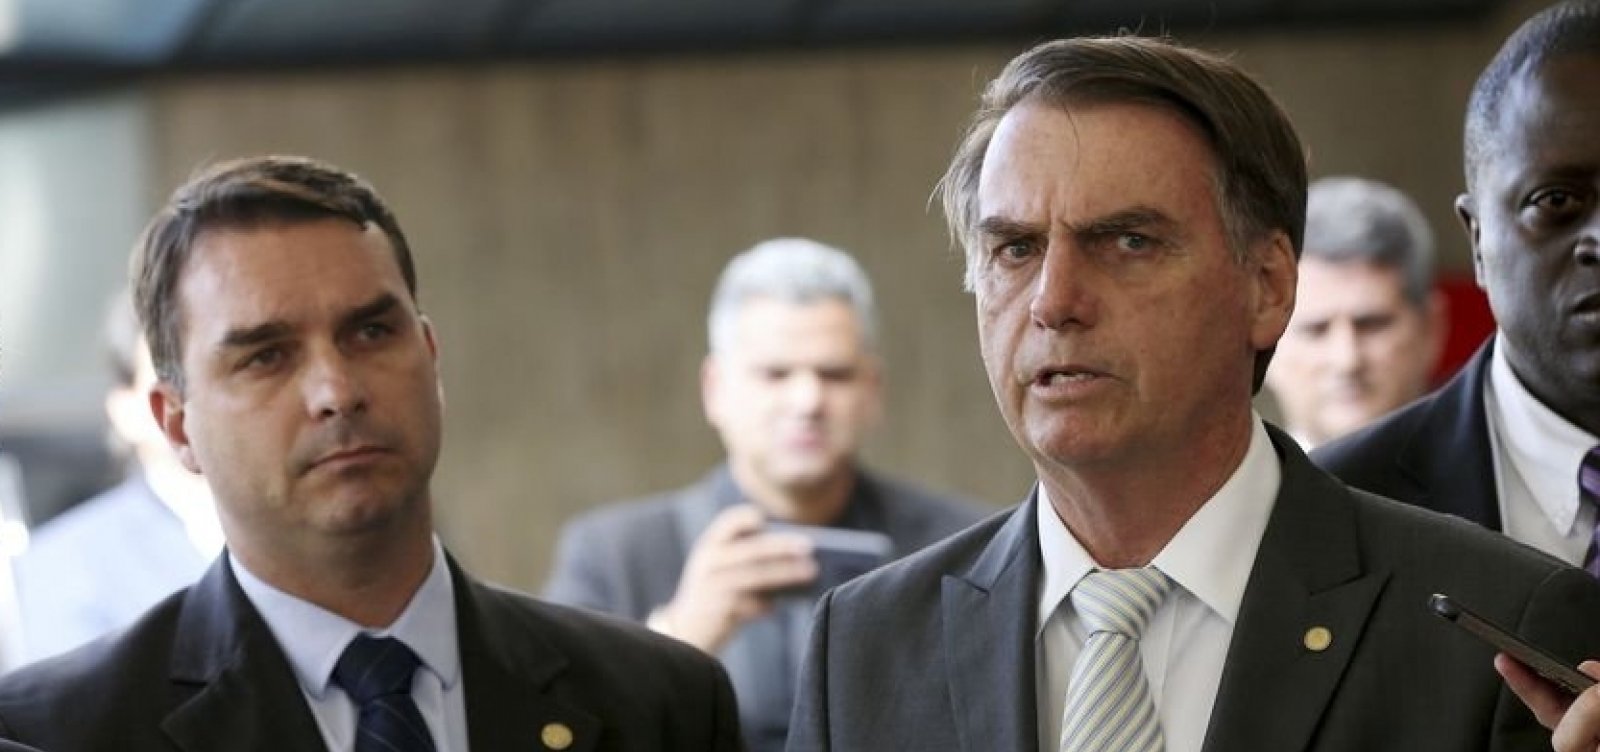 PT quer incluir aditivos no pedido de investigação de filho e esposa de Bolsonaro, diz coluna